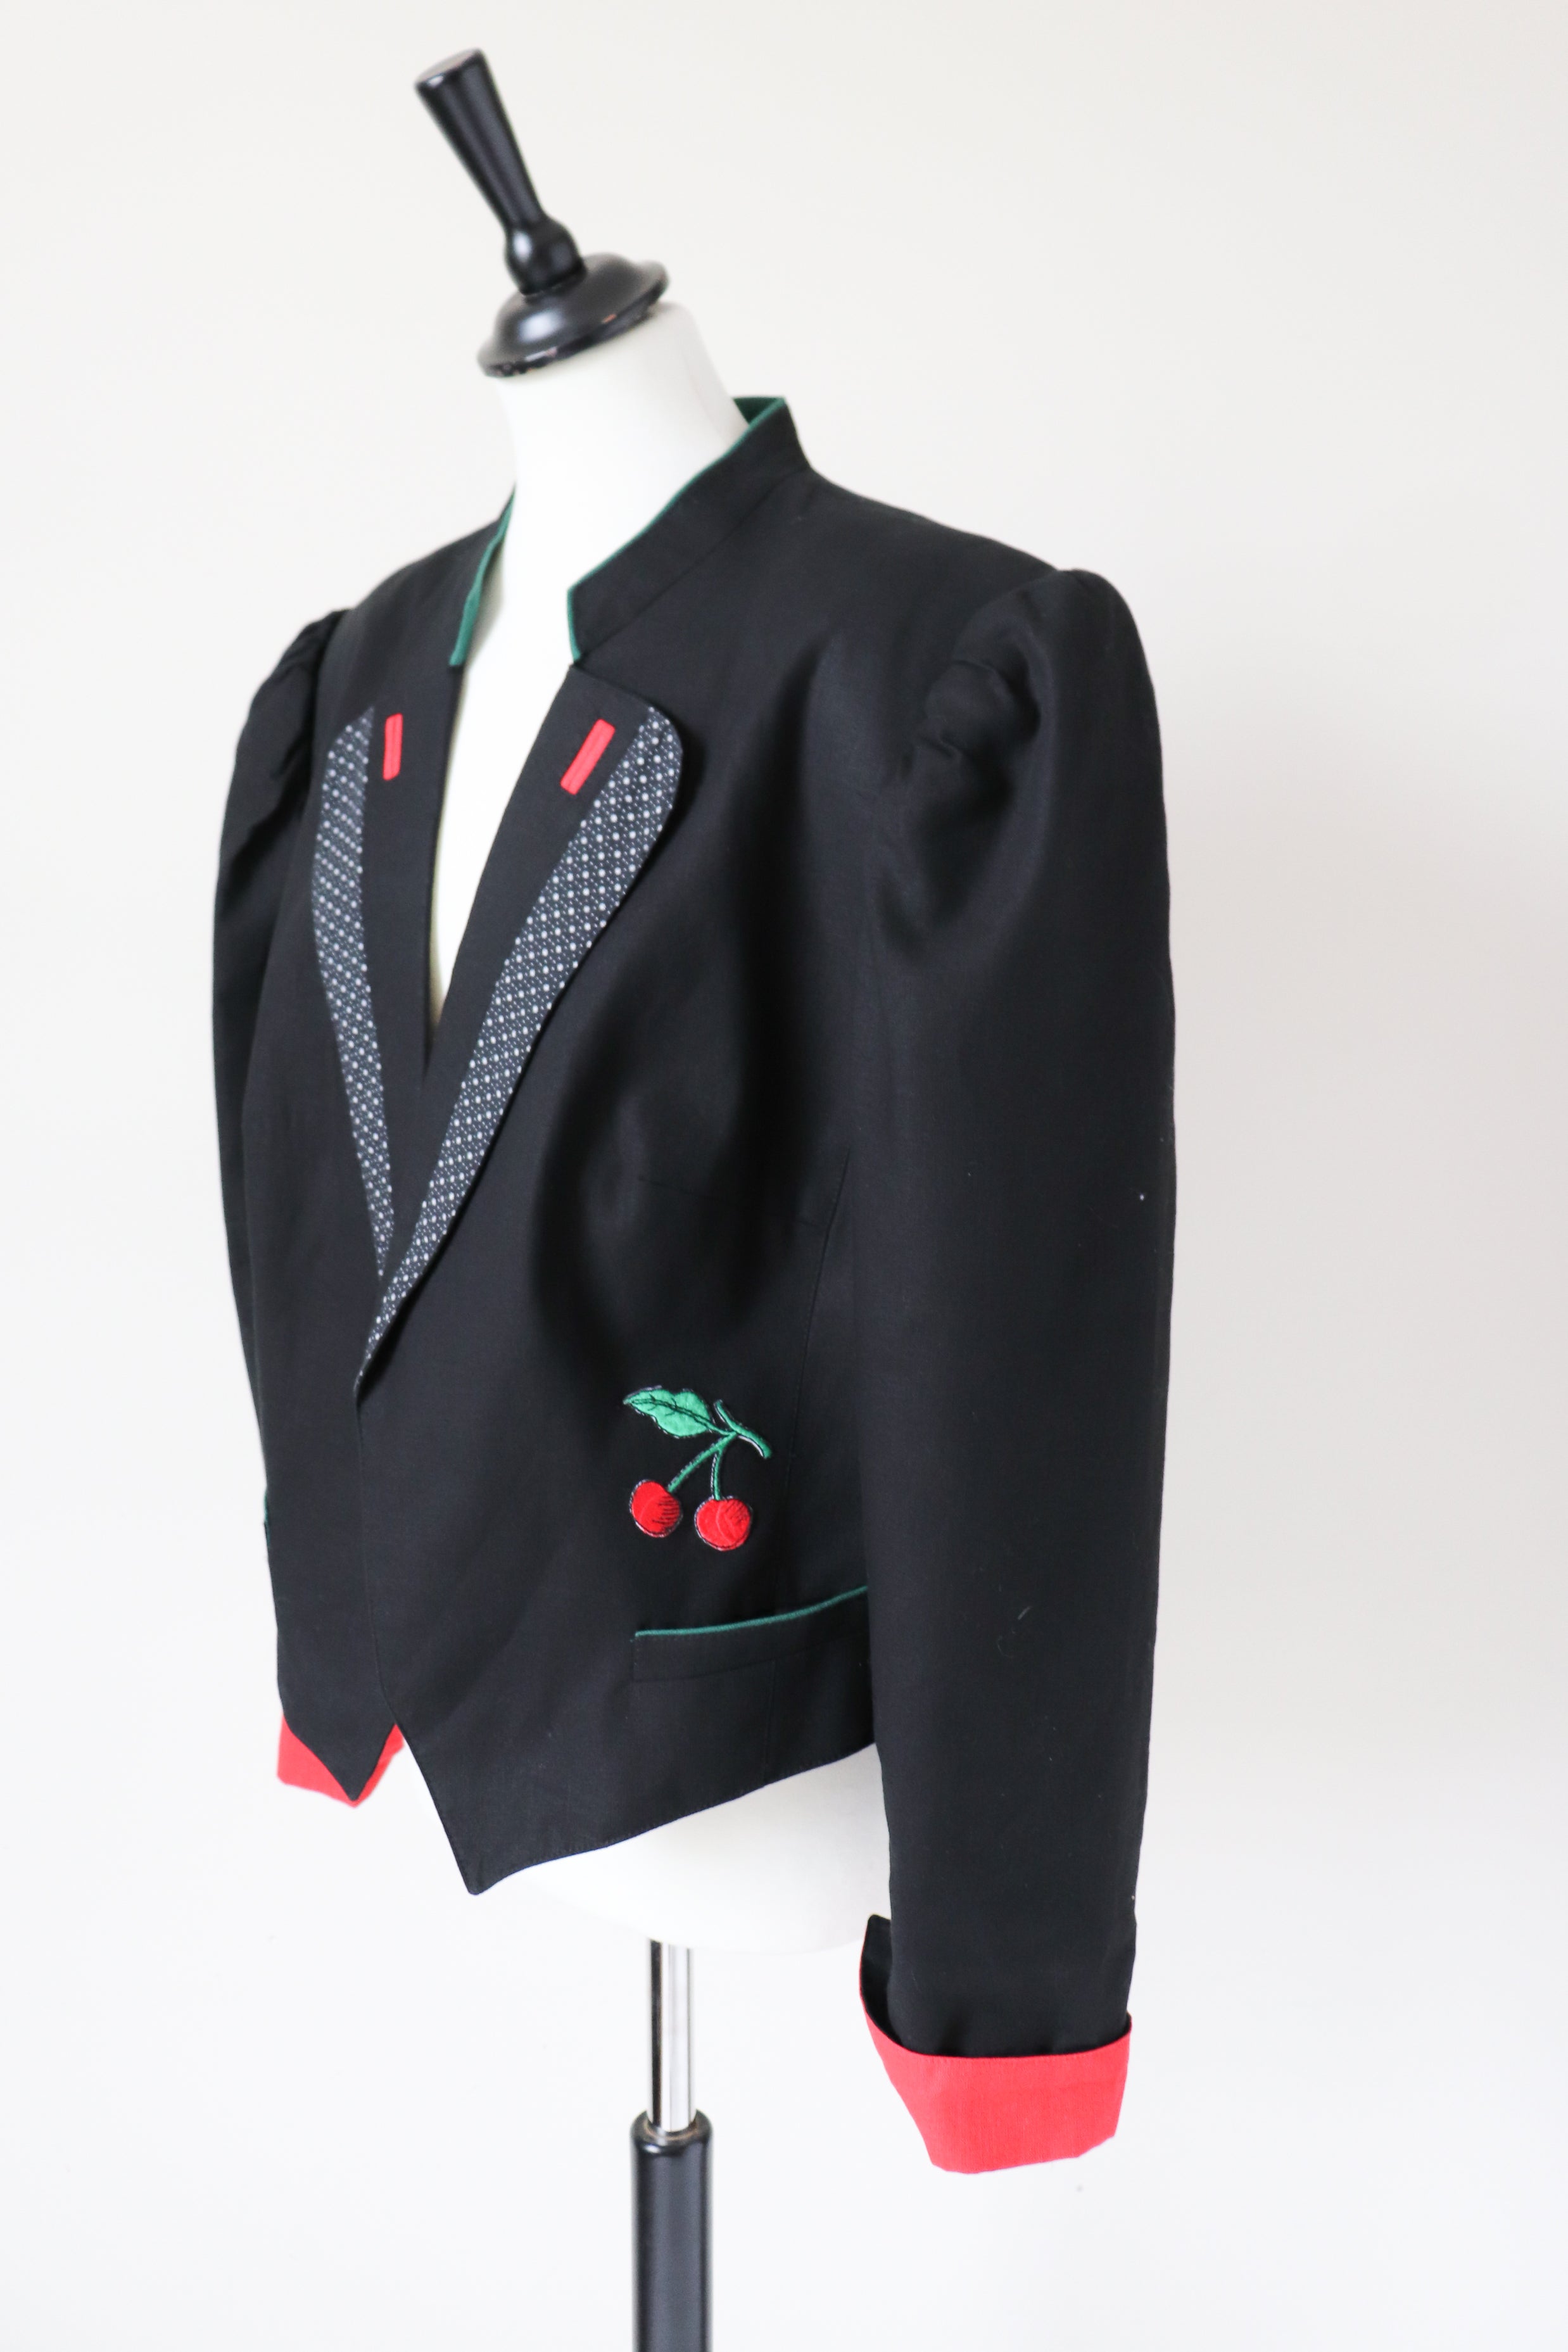 C&A Black Tirol Trachten Jacket - Vintage 1980s - Linen / Cotton Blend - Fit L / UK 14